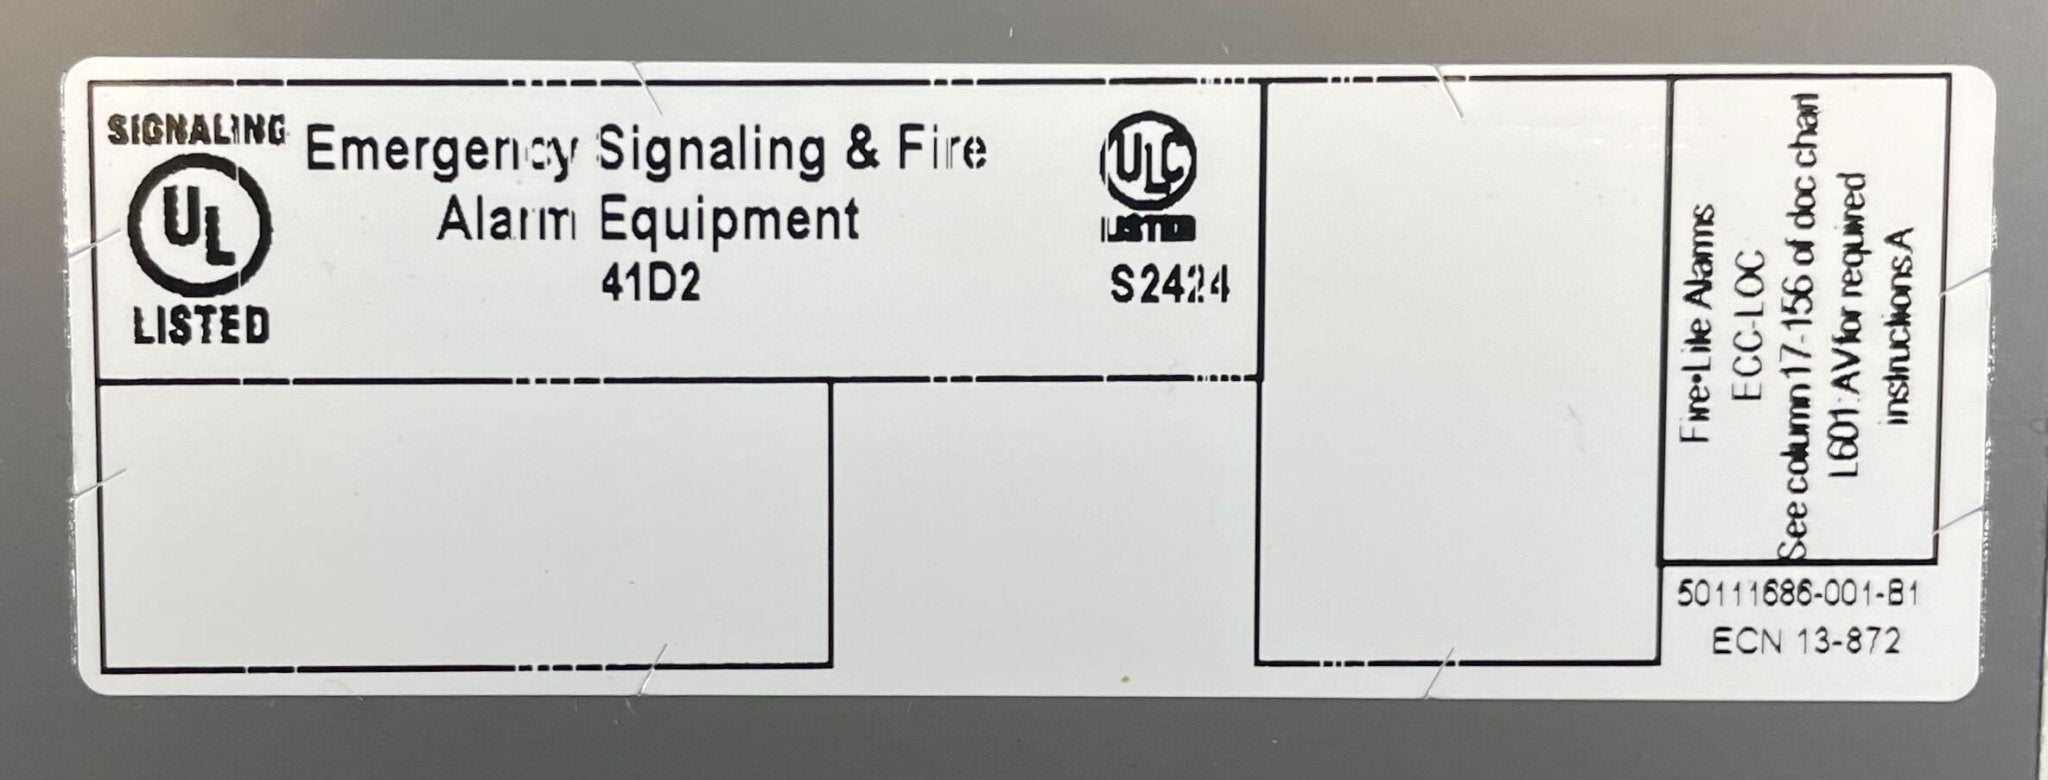 Firelite ECC-LOC - The Fire Alarm Supplier